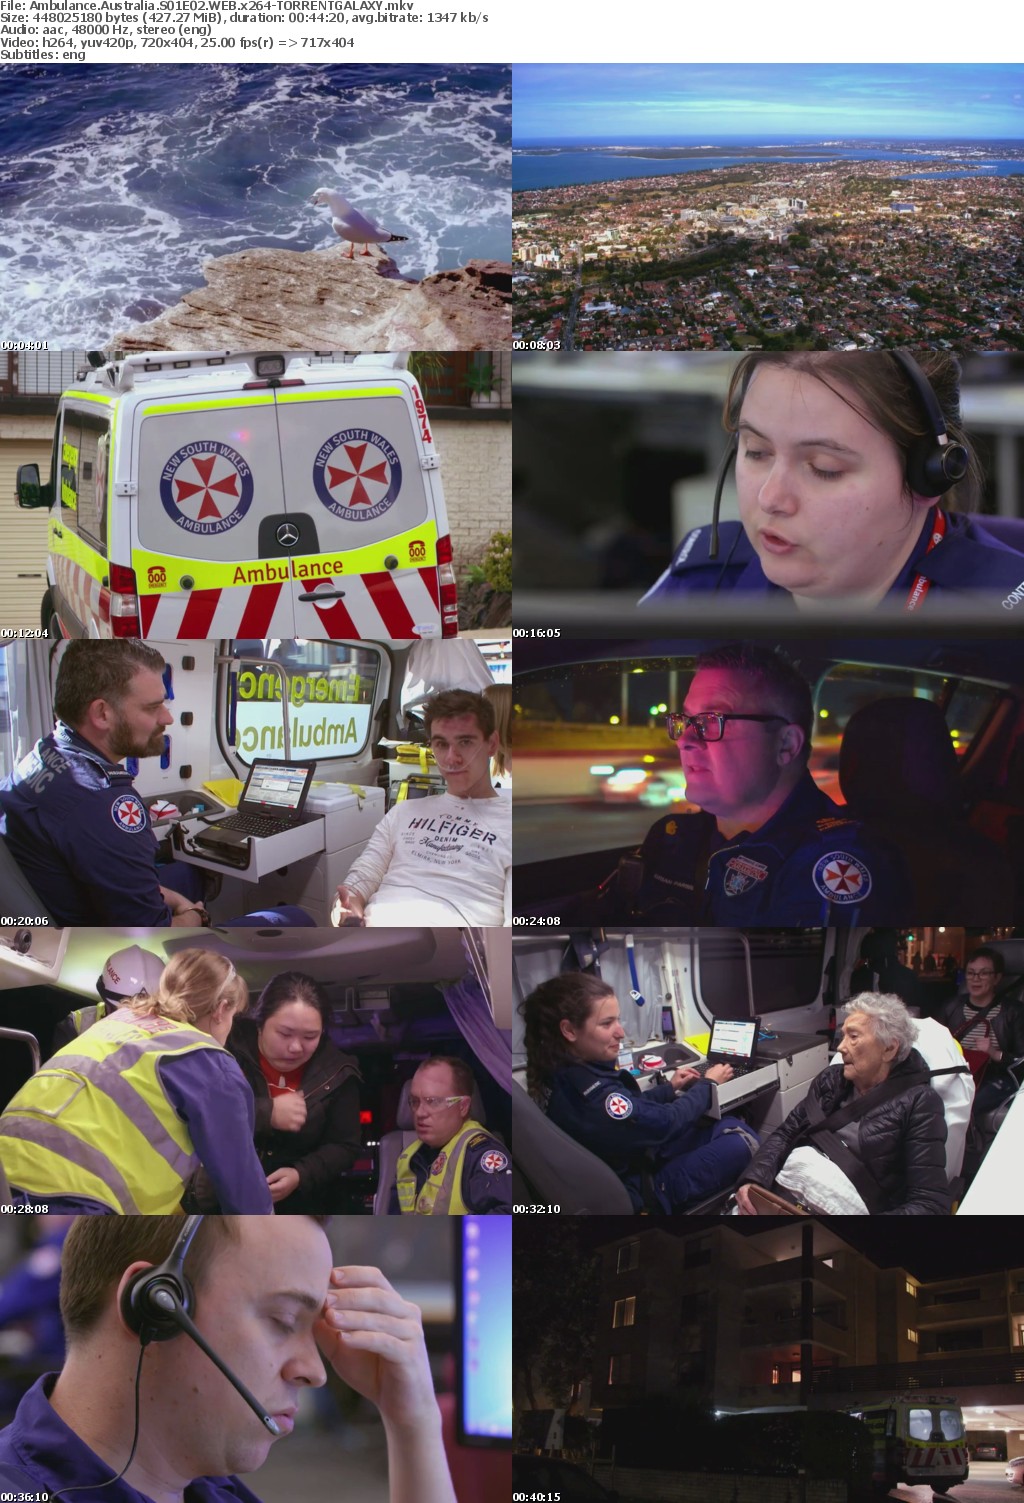 Ambulance Australia S01E02 WEB x264-GALAXY